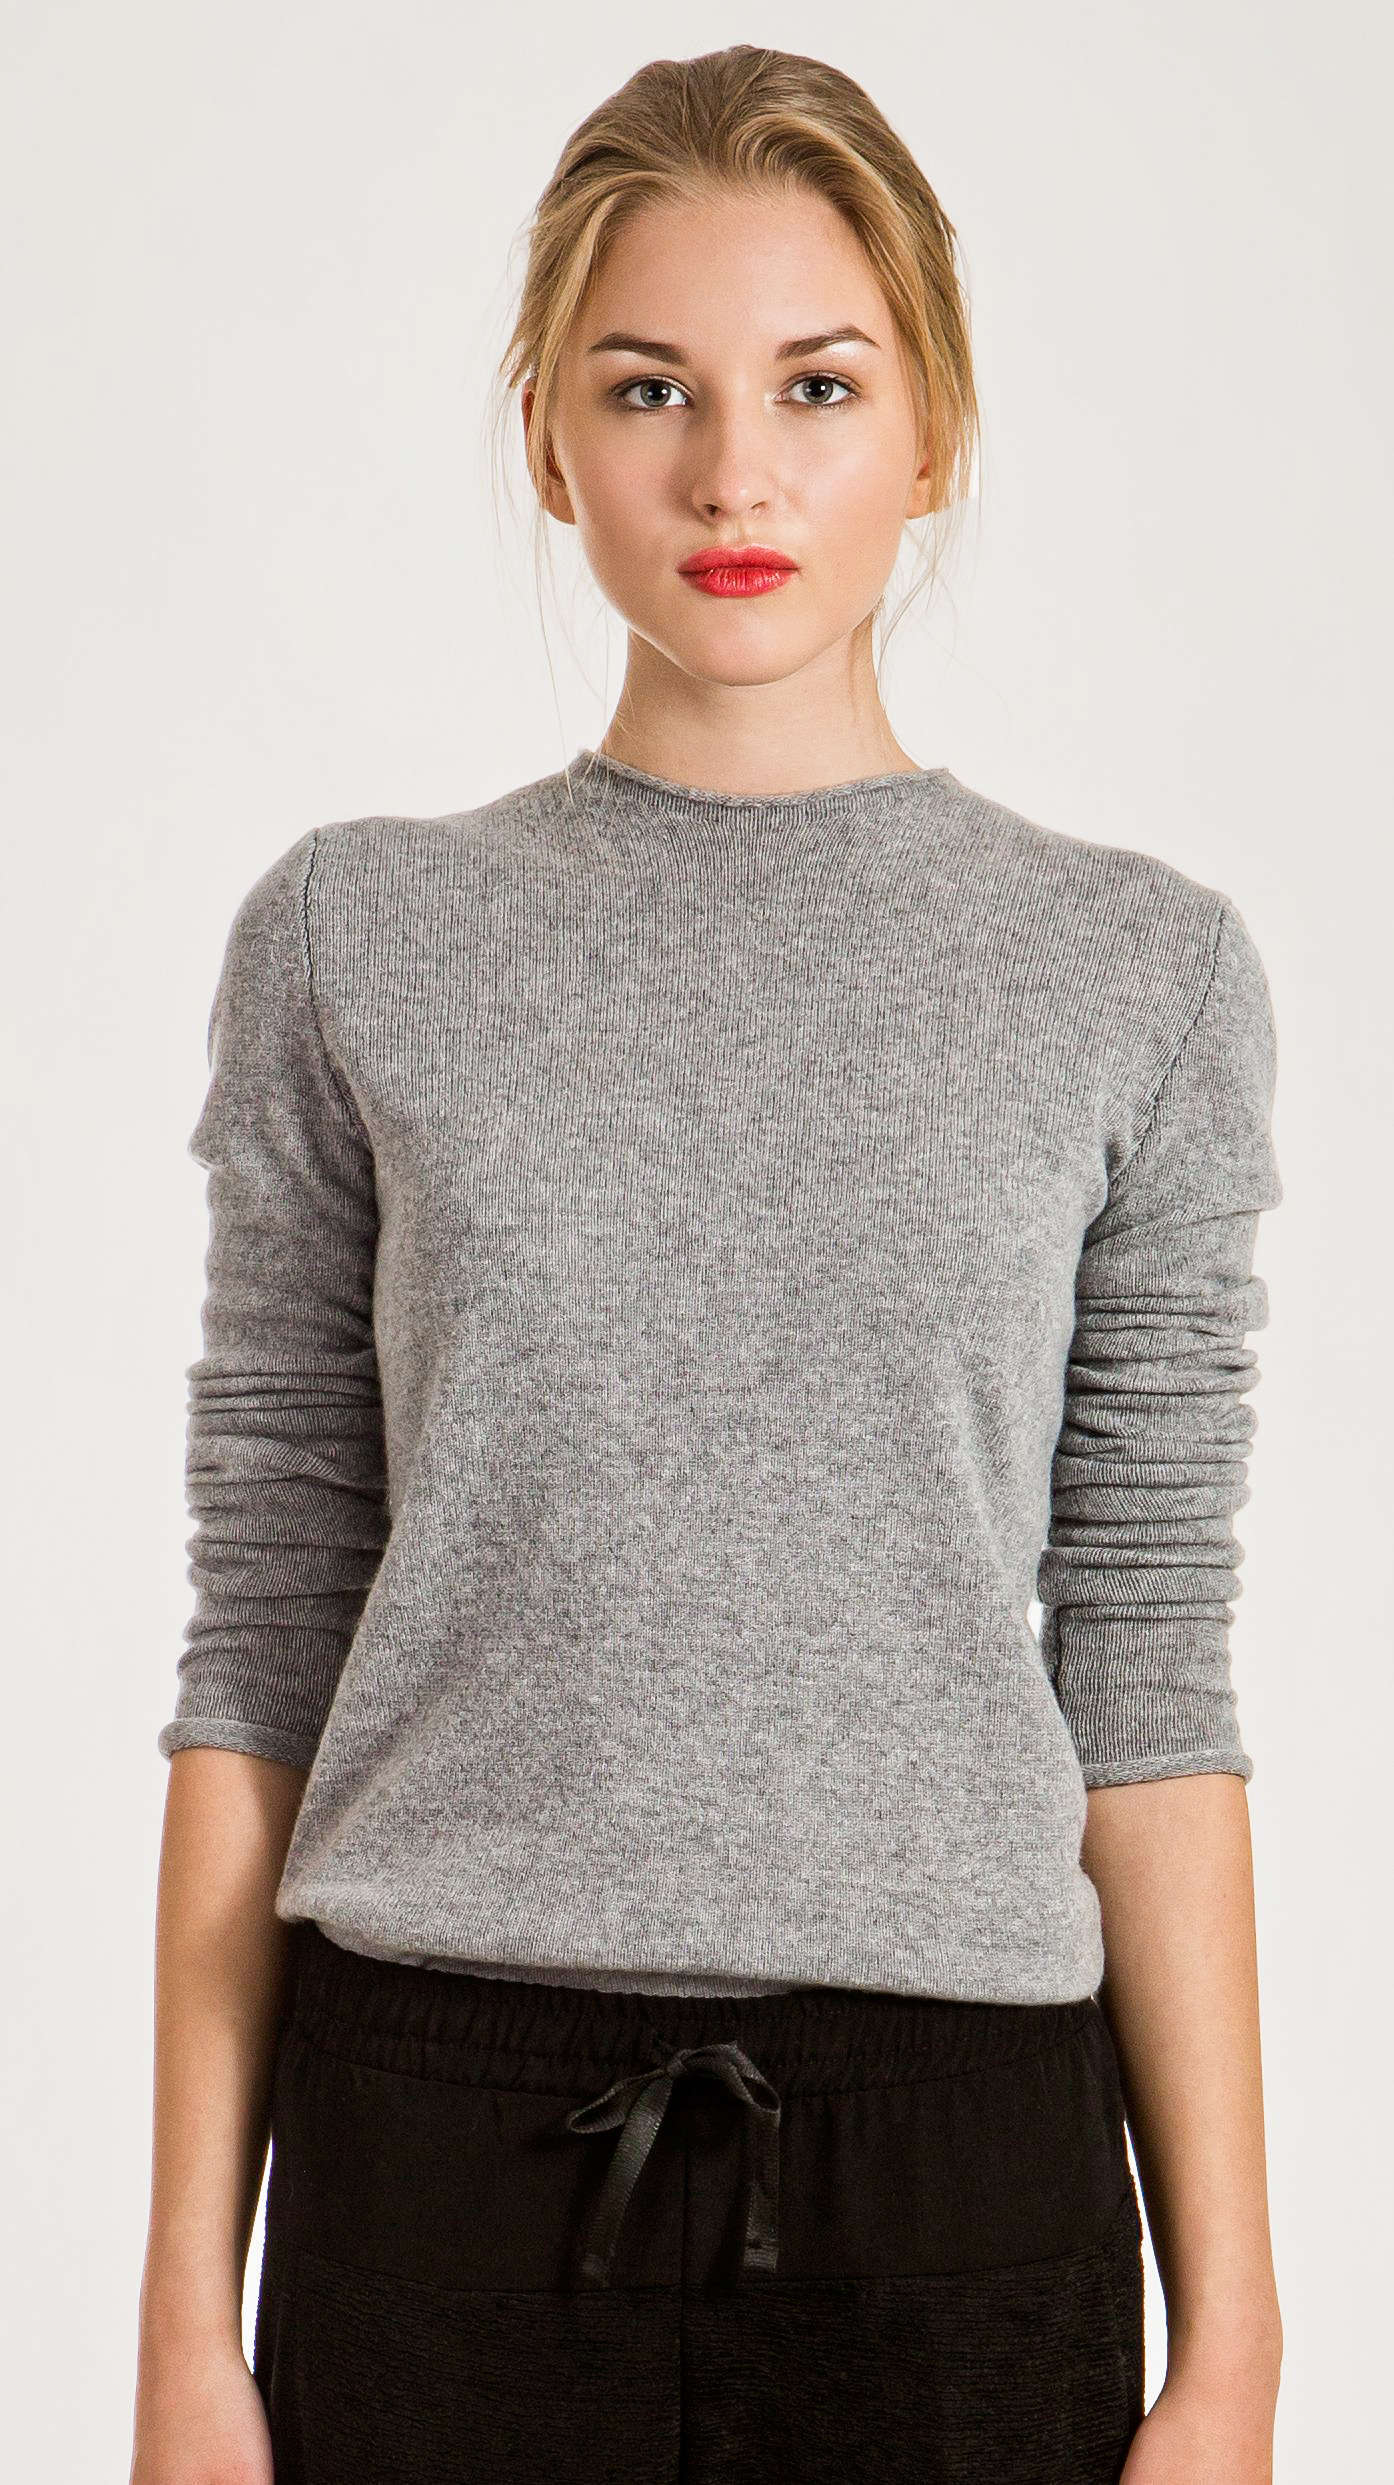 Womens cashmere sweater KAREN in grey, black, dark blue